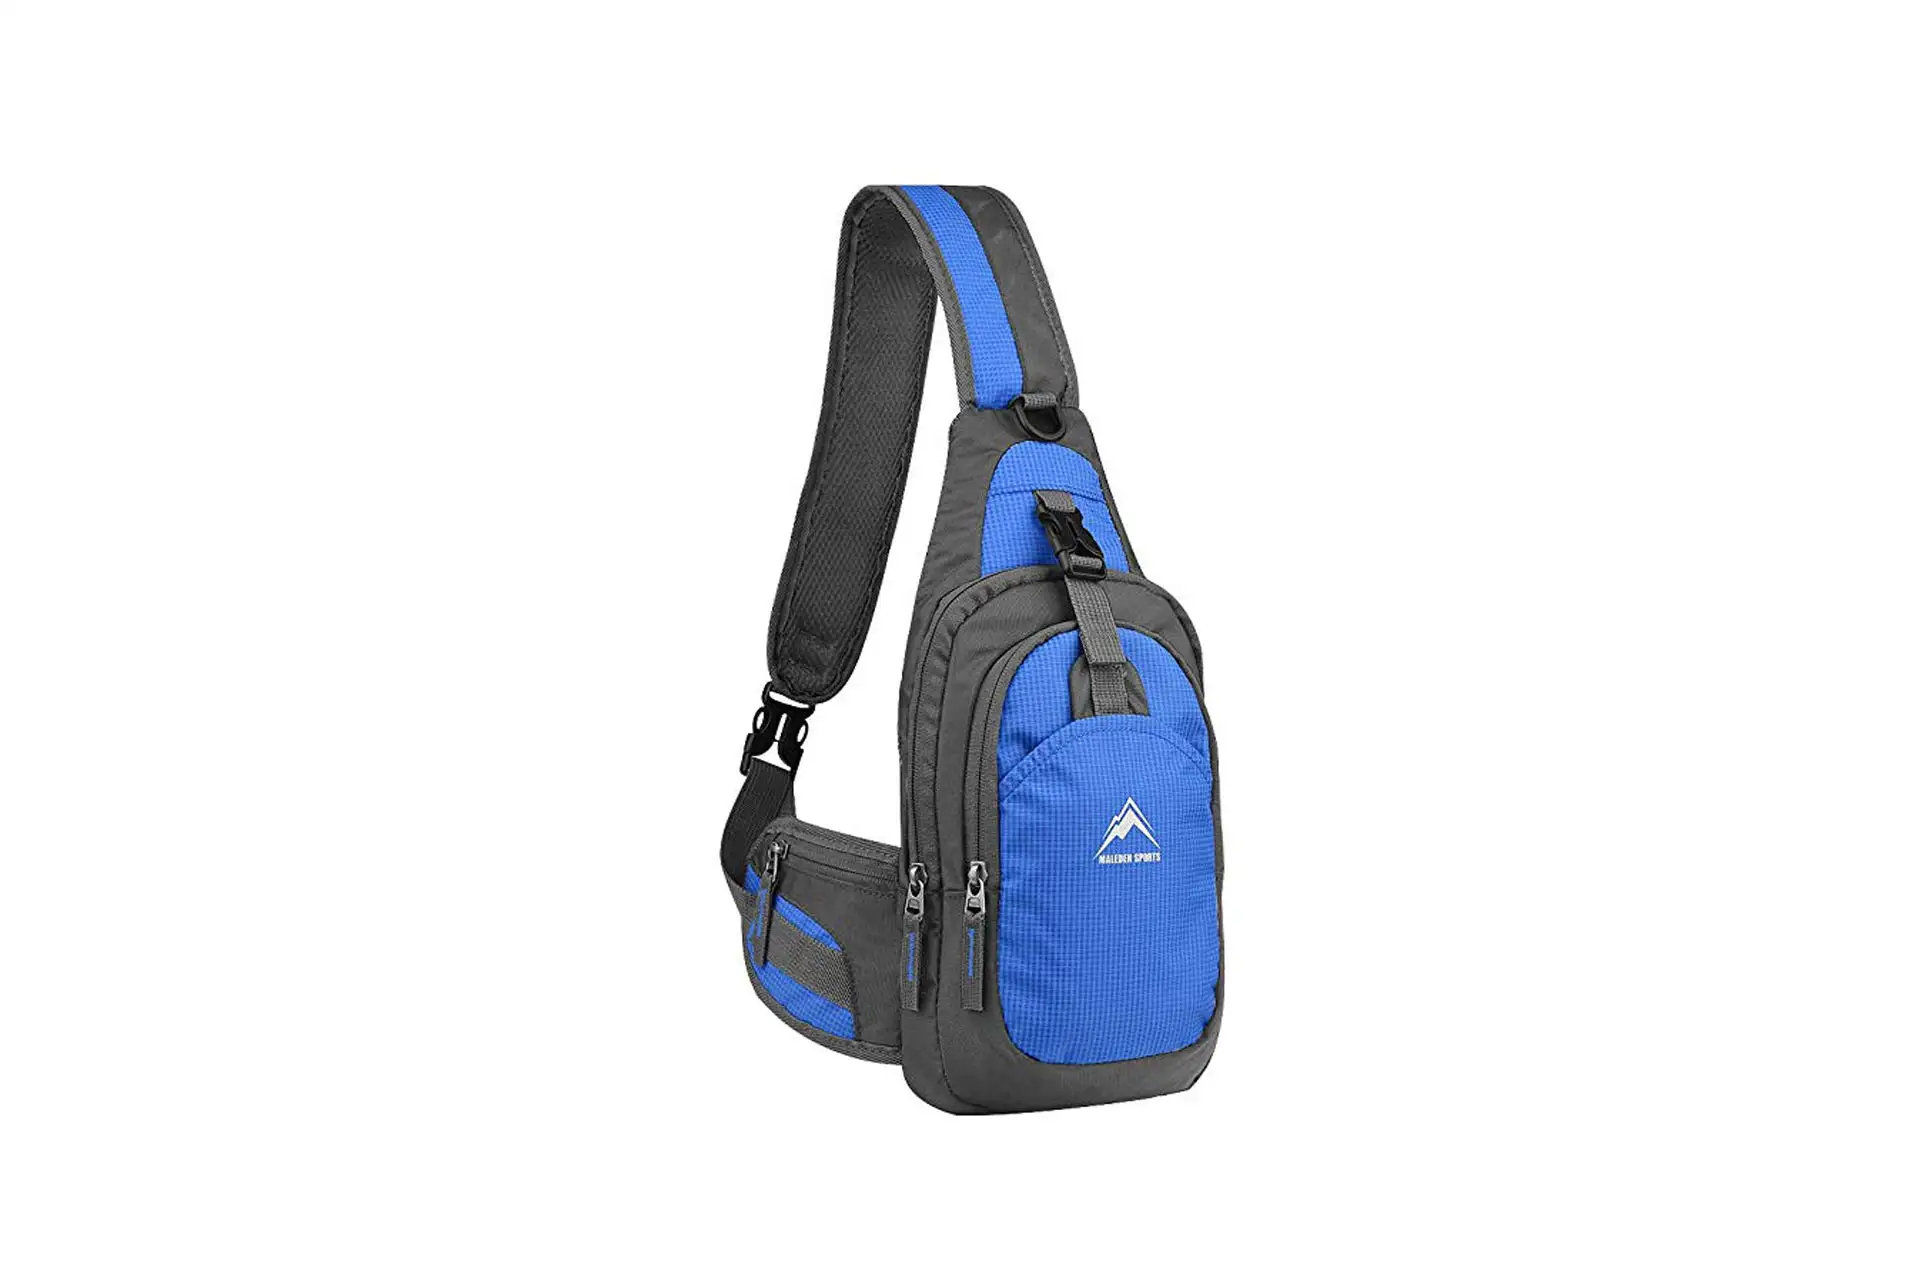 Sling Backpack; Courtesy of Amazon